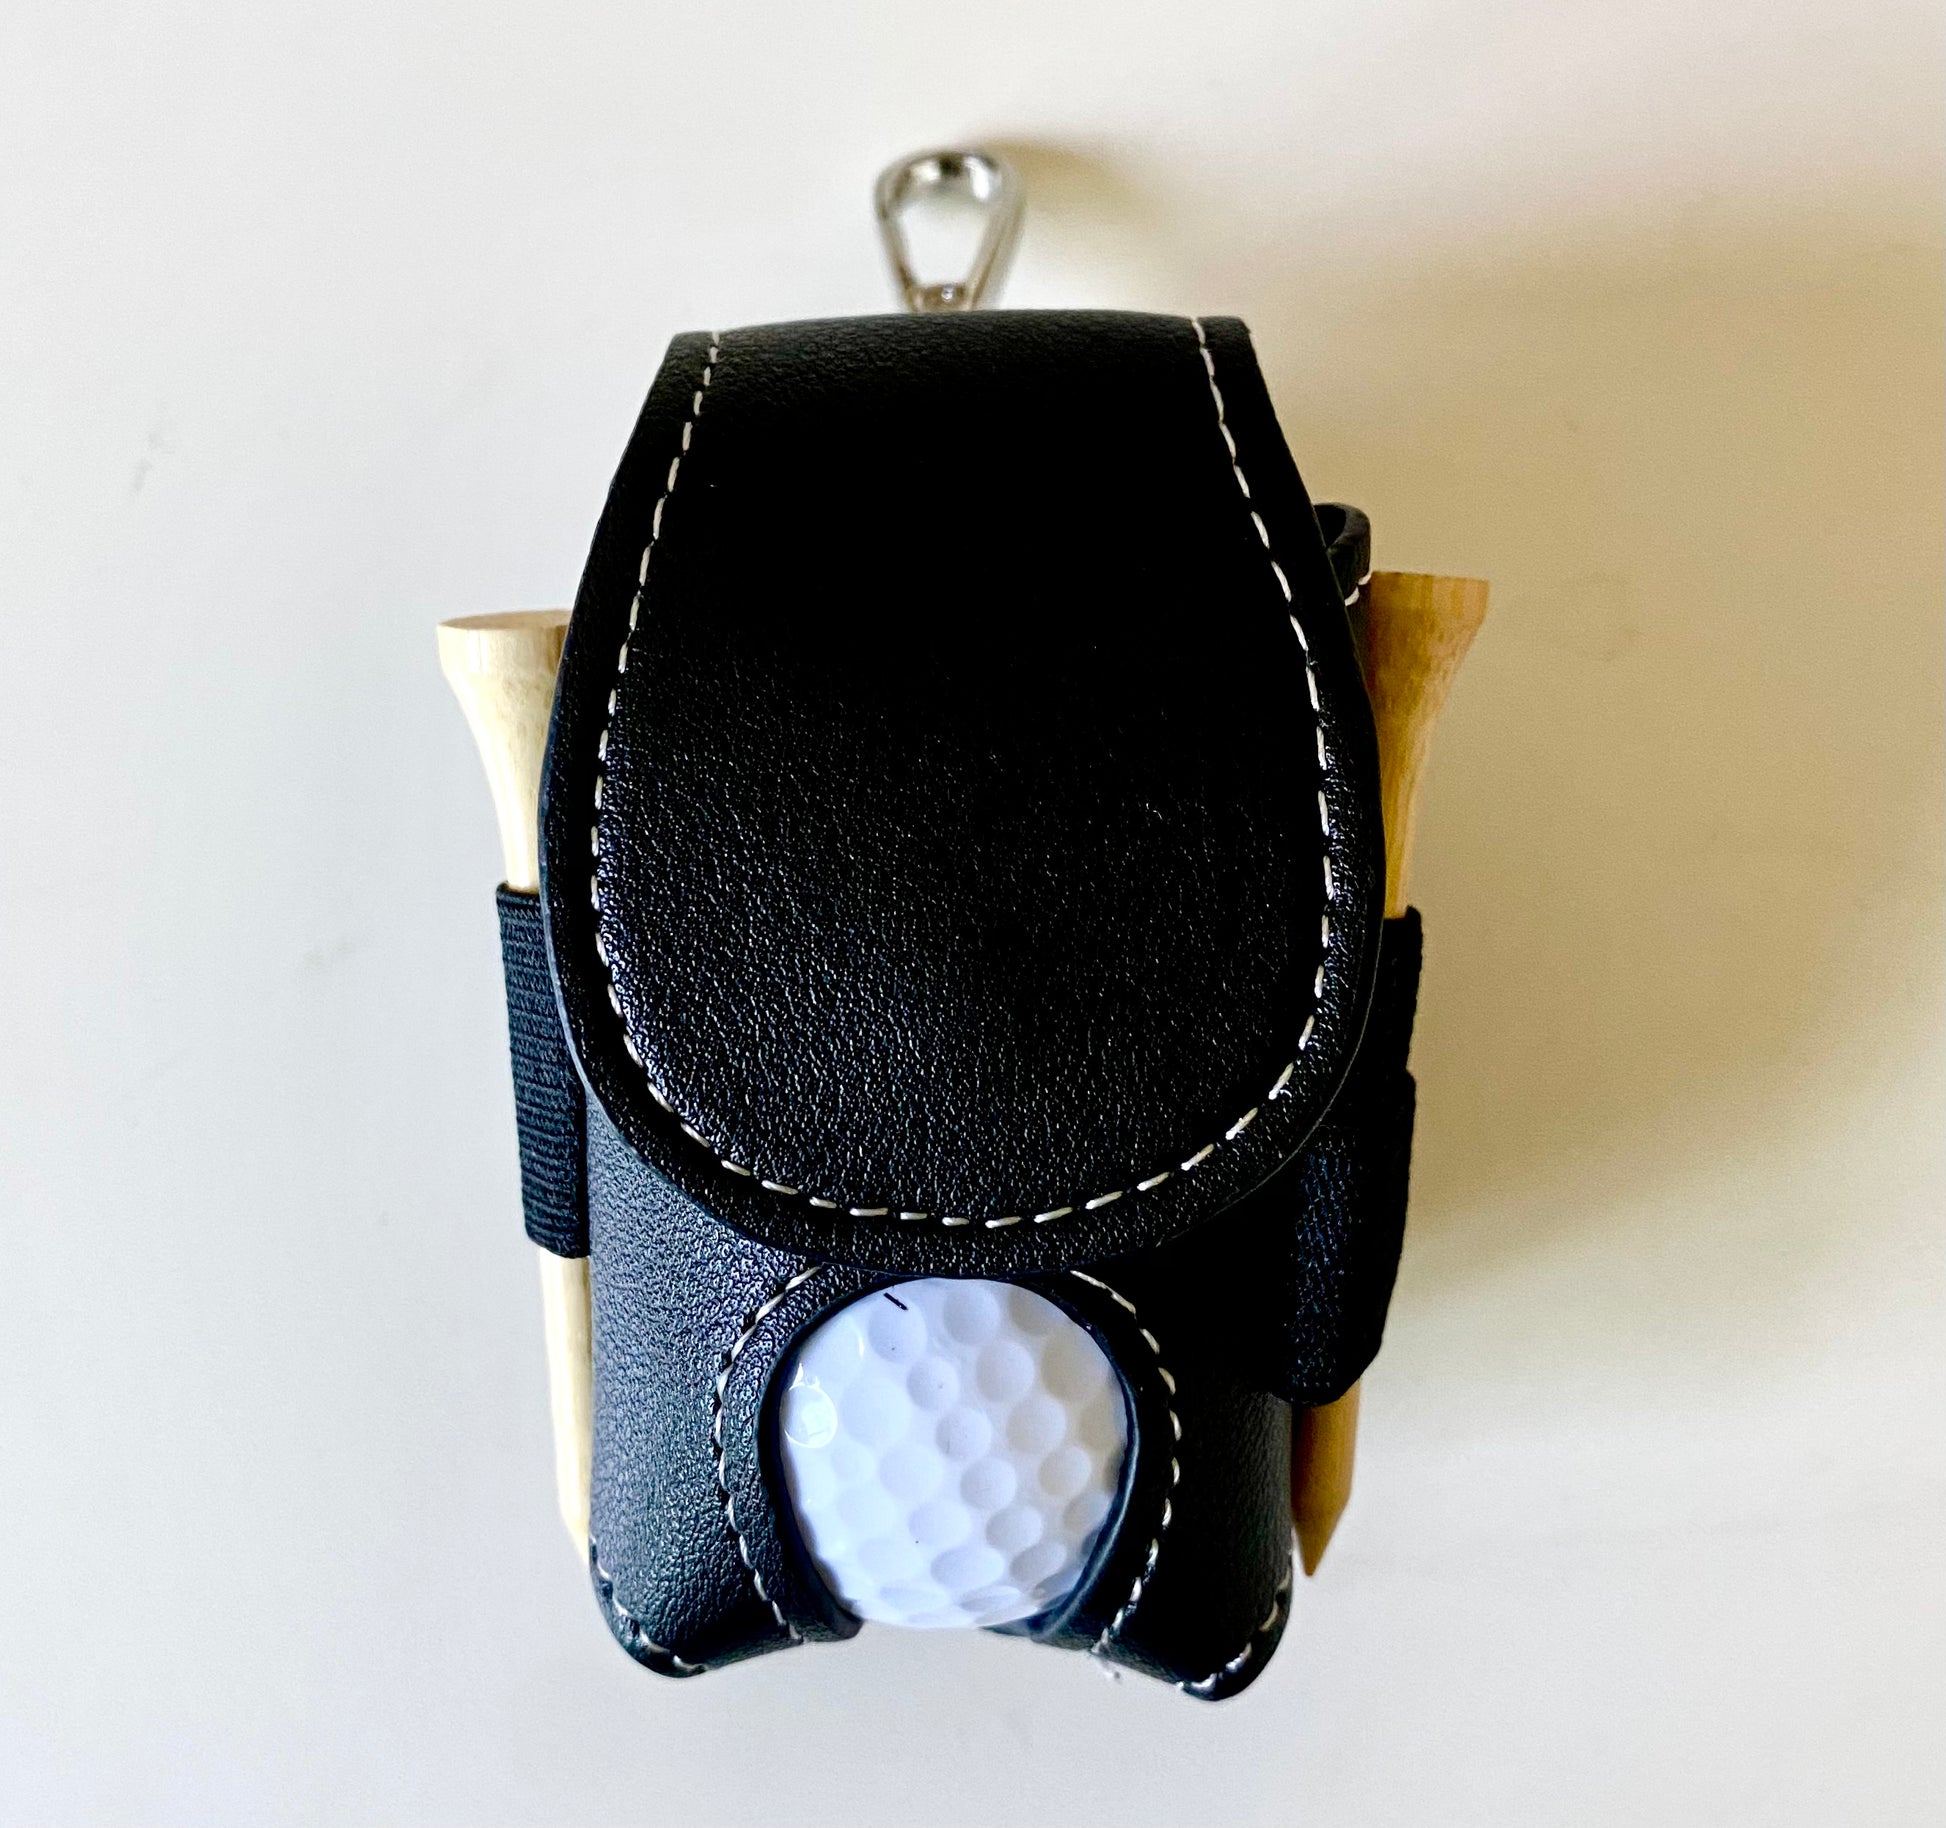 CORECISE Golf Tee Pouch Bag,Zipper Golf Ball Bag,Golf Accessory Pouch,Golf  Accessories for Men Black